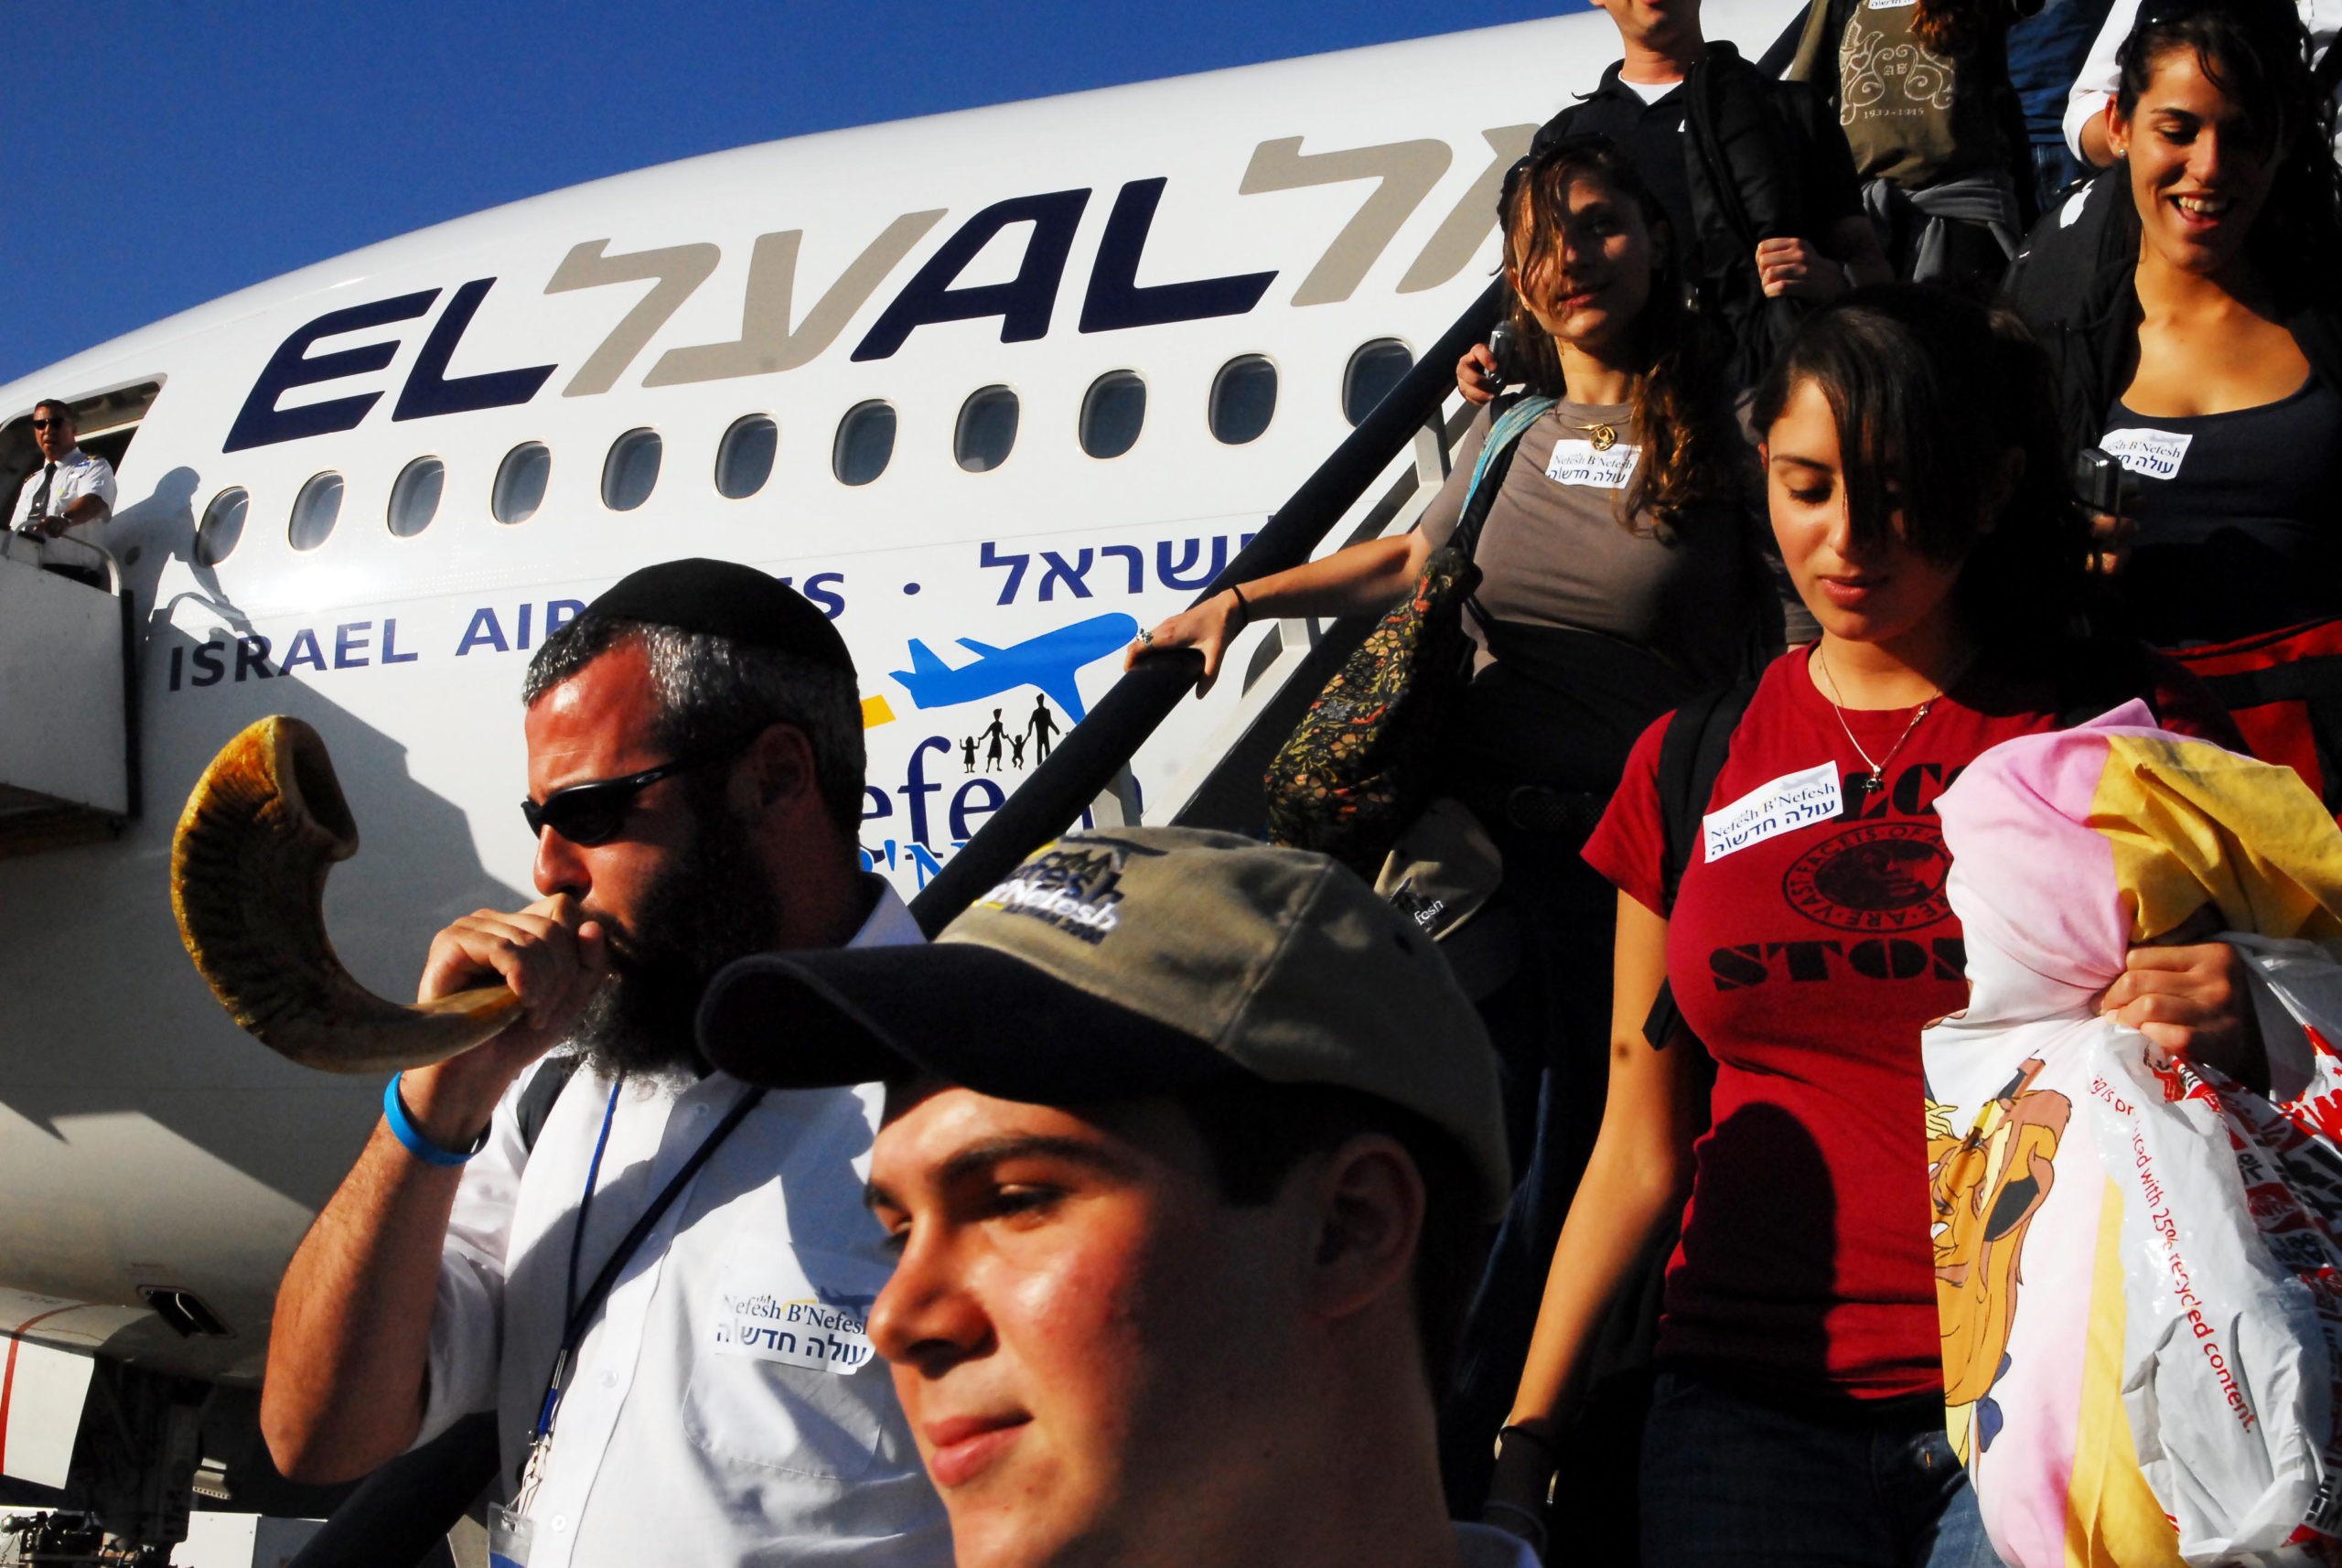 Olim arriving in Israel